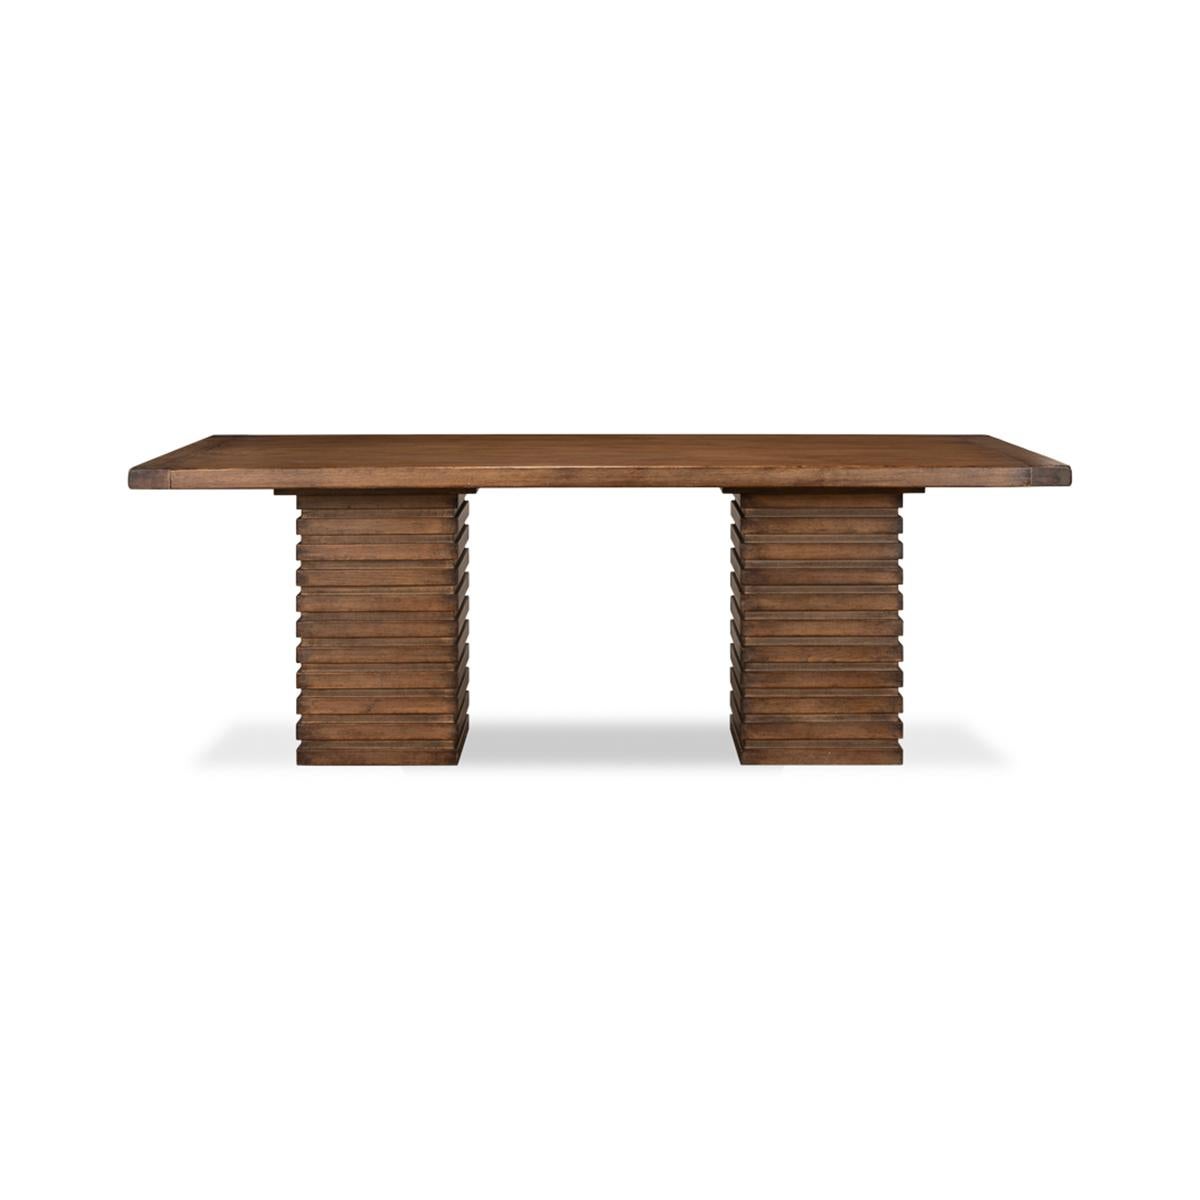 La table à manger moderne empilée est fabriquée en pin avec une finition teintée acajou. Le plateau de la planche à pain repose sur des socles à deux colonnes au design géométrique moderne empilé.

Dimensions : 87